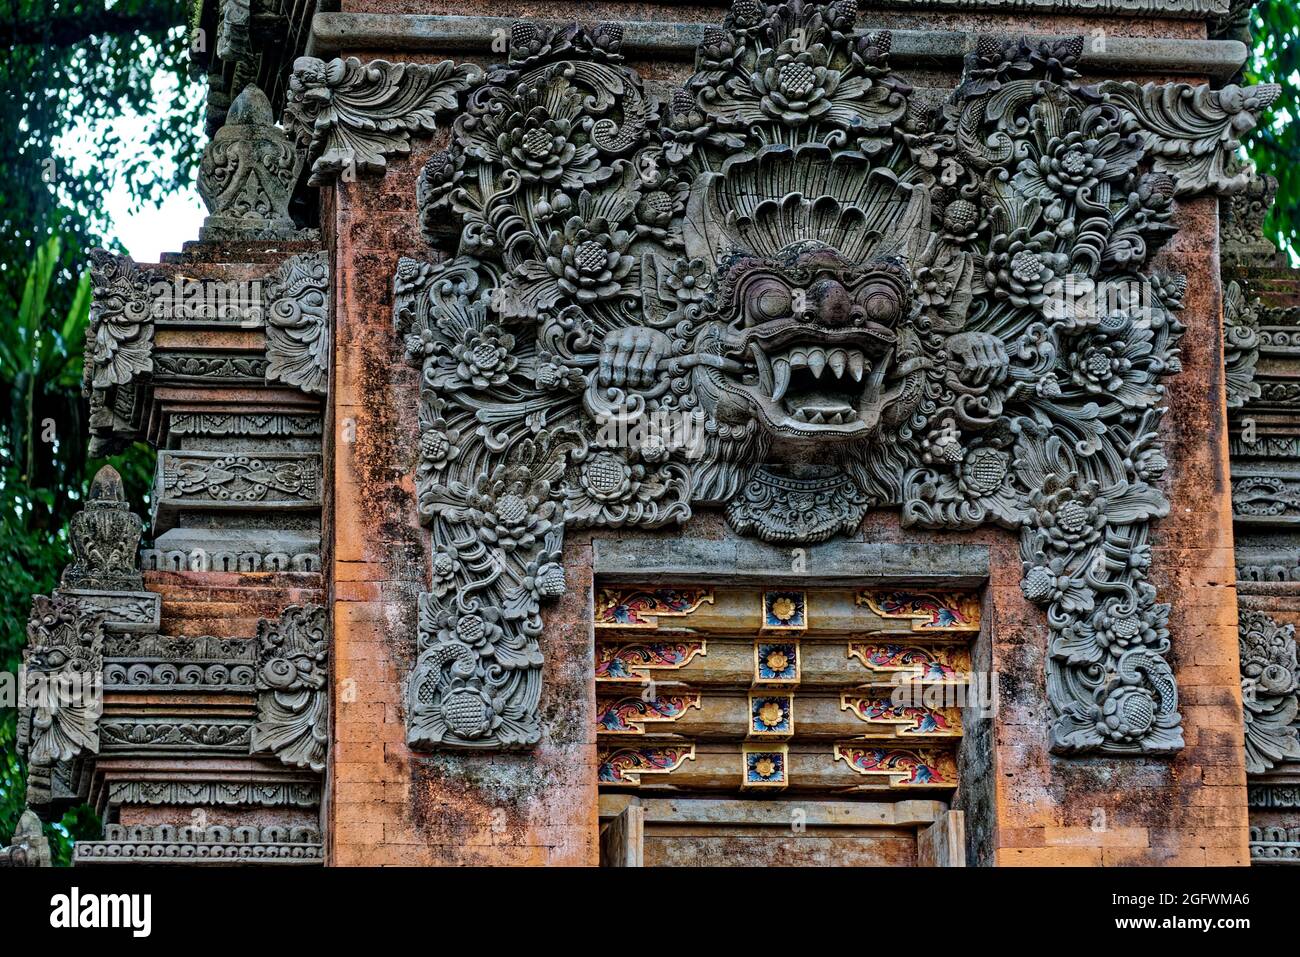 Ingresso al Tempio Guardiano, Bali Foto Stock